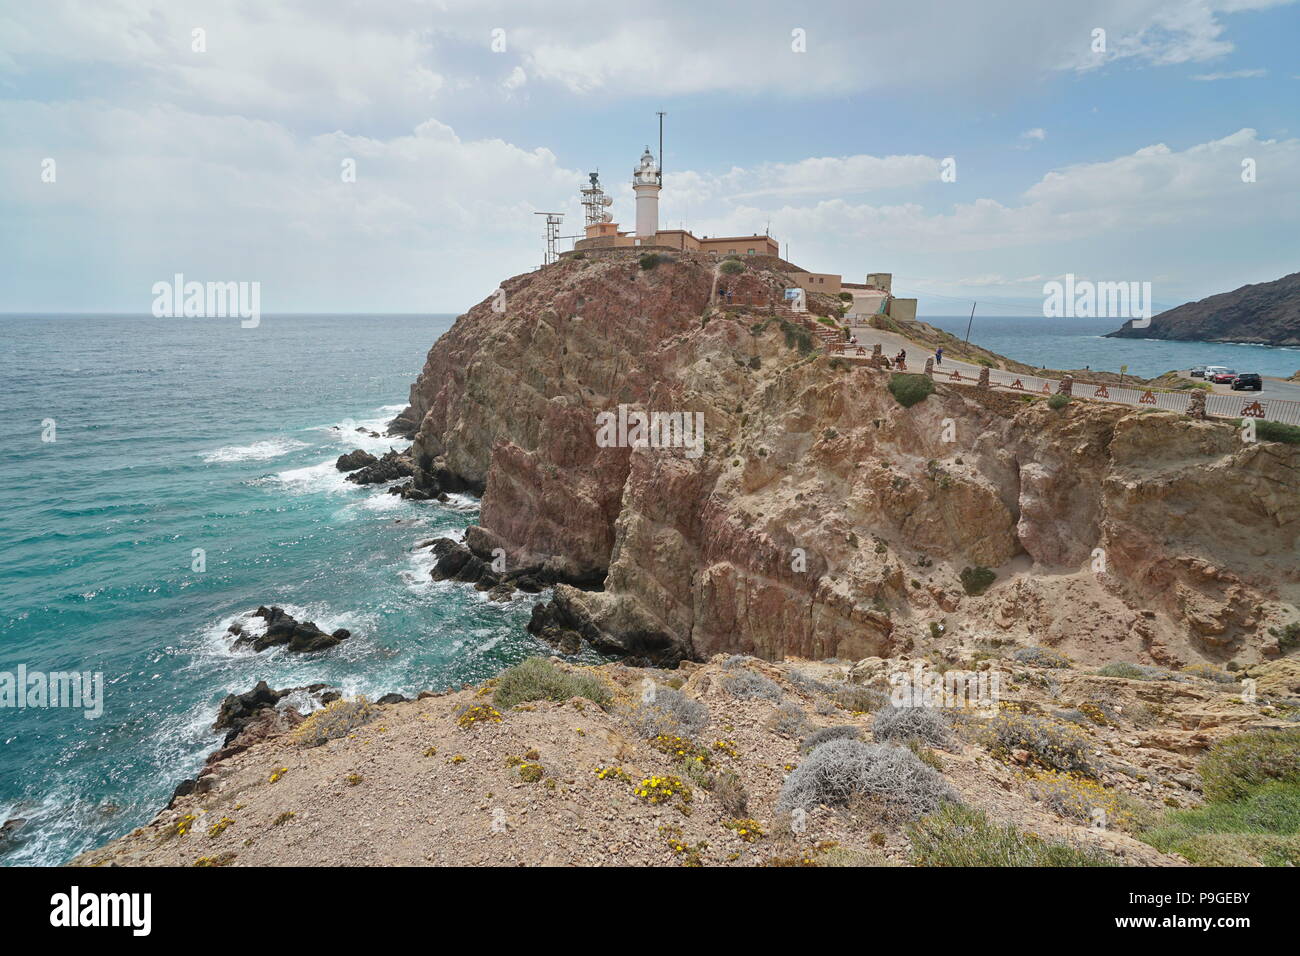 The cape de Gata lighthouse, Cabo de Gata-Níjar natural park, Mediterranean sea, Almeria, Andalusia, Spain Stock Photo